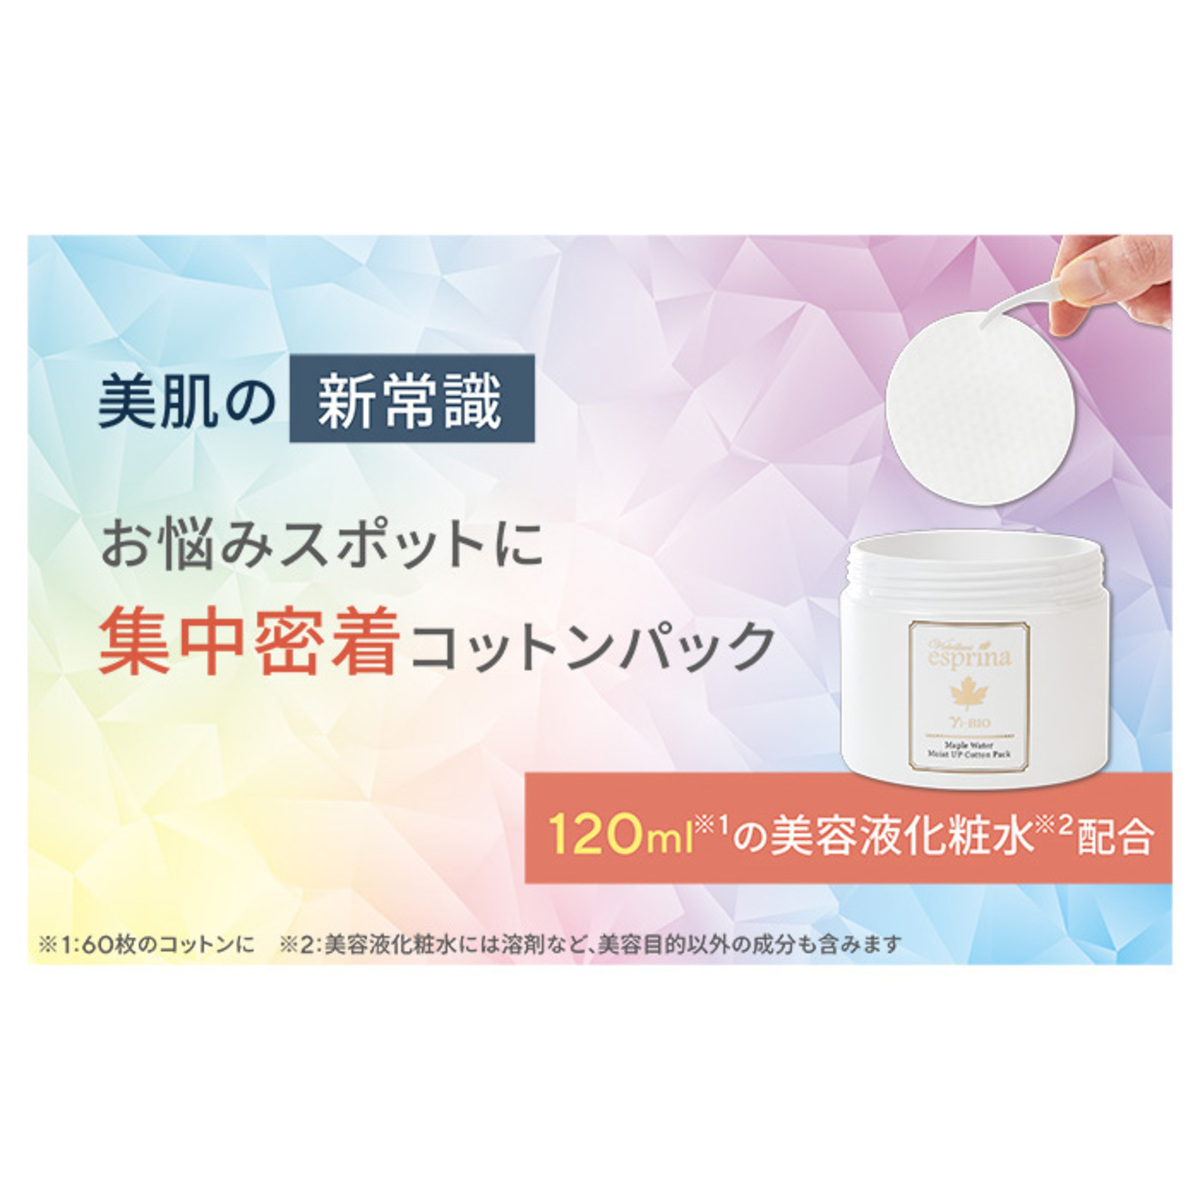 エスプリーナvi-BIOモイストアップコットンパック2個セット - QVC.jp